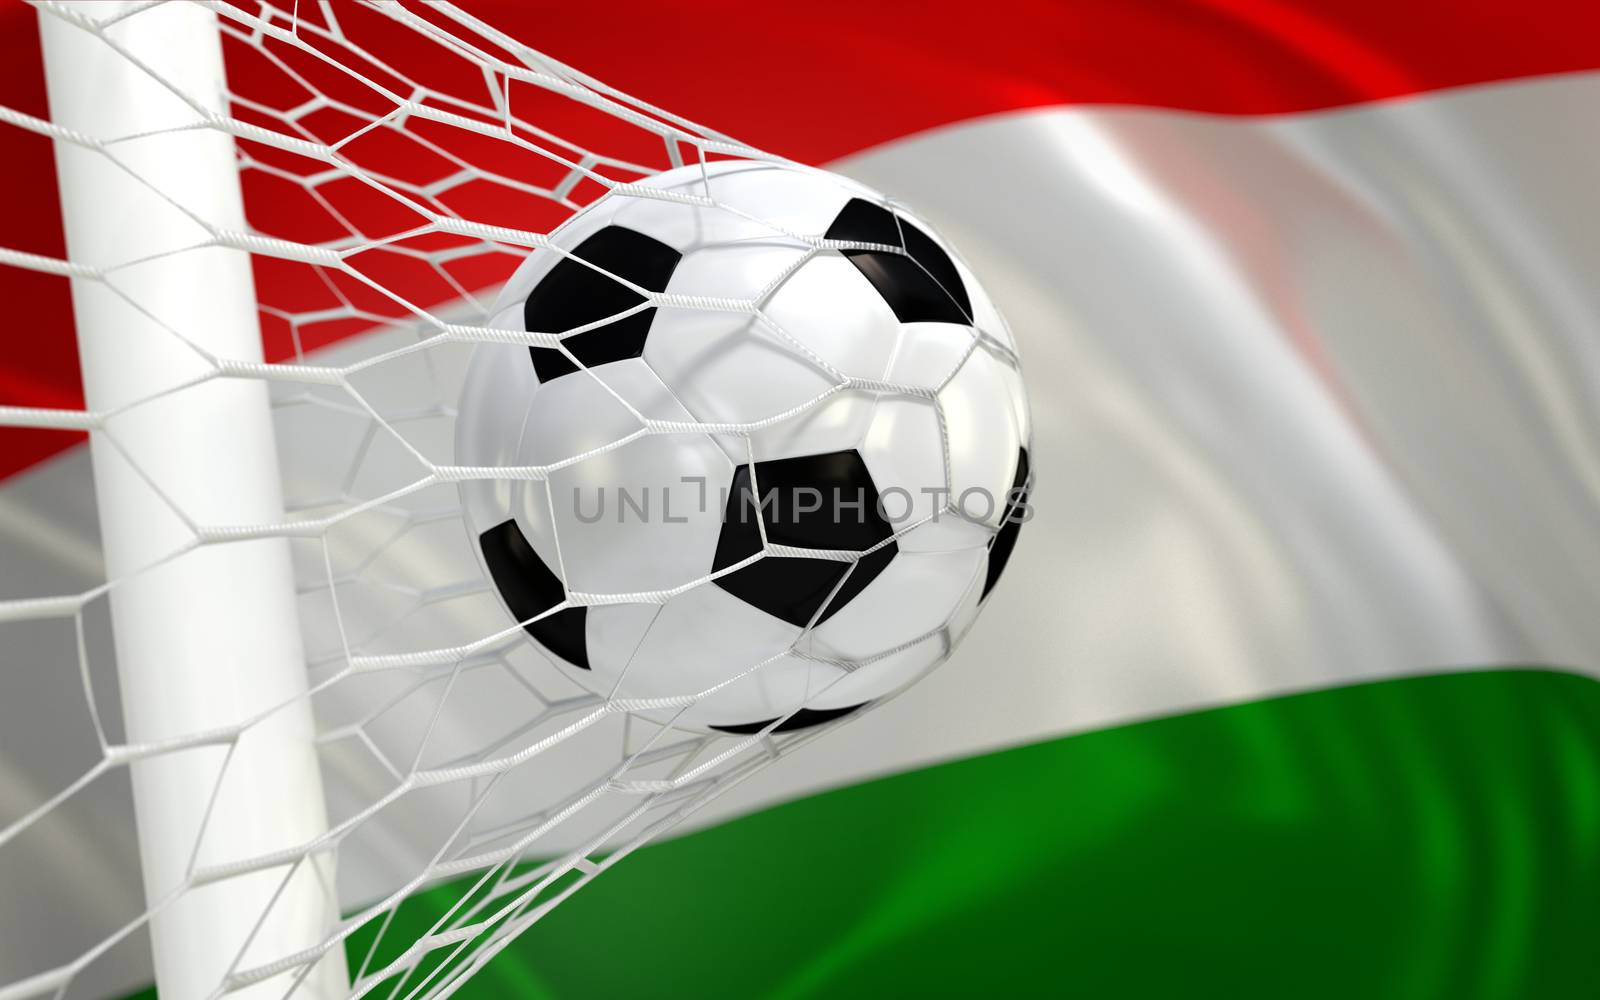 Hungary flag and soccer ball, football in goal net